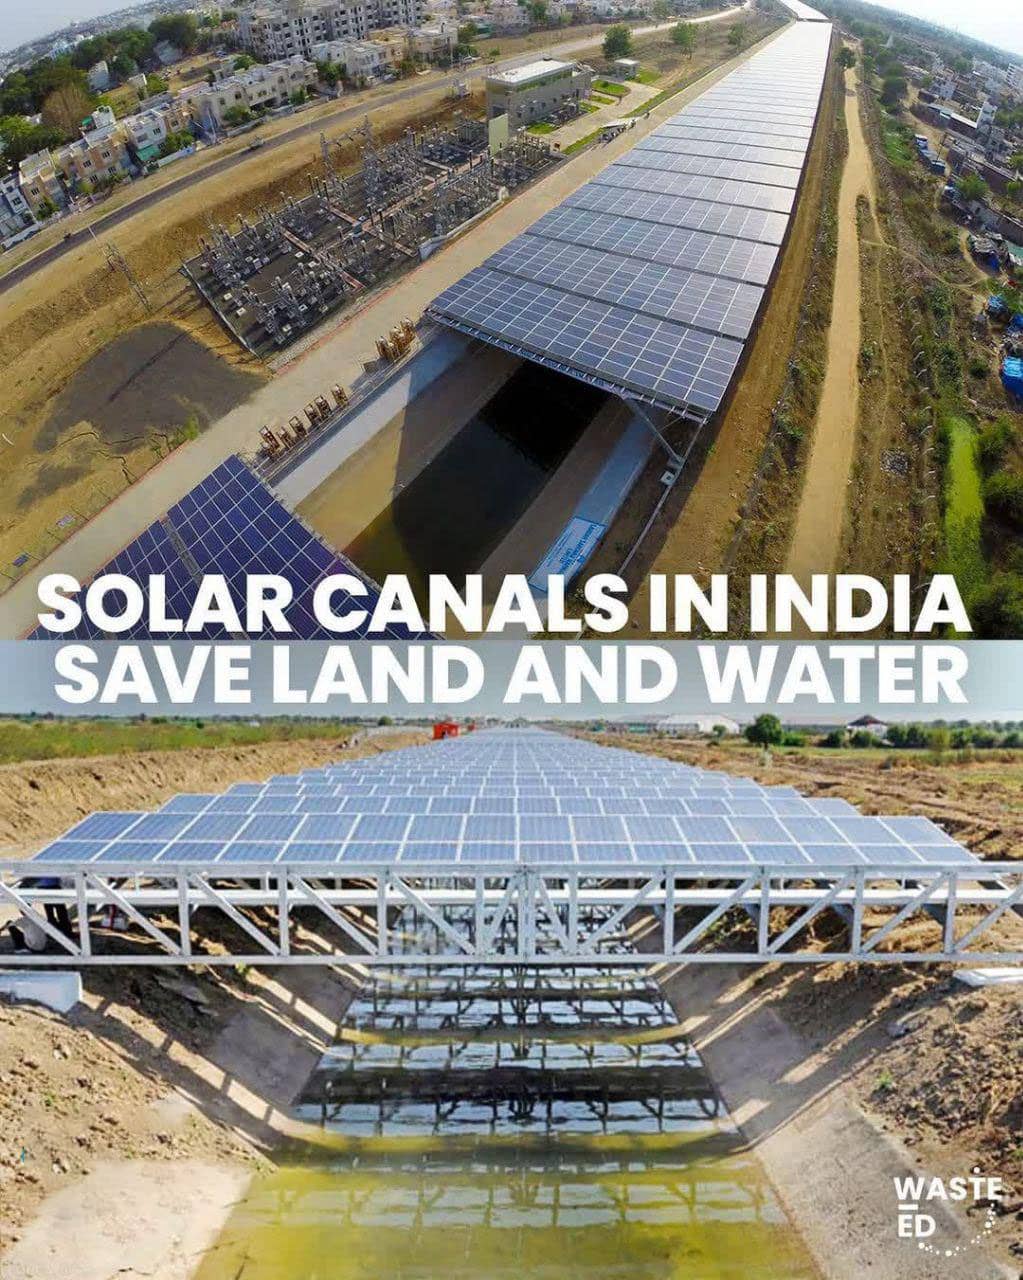 کانال های خورشیدی تبخیر را کاهش می دهند